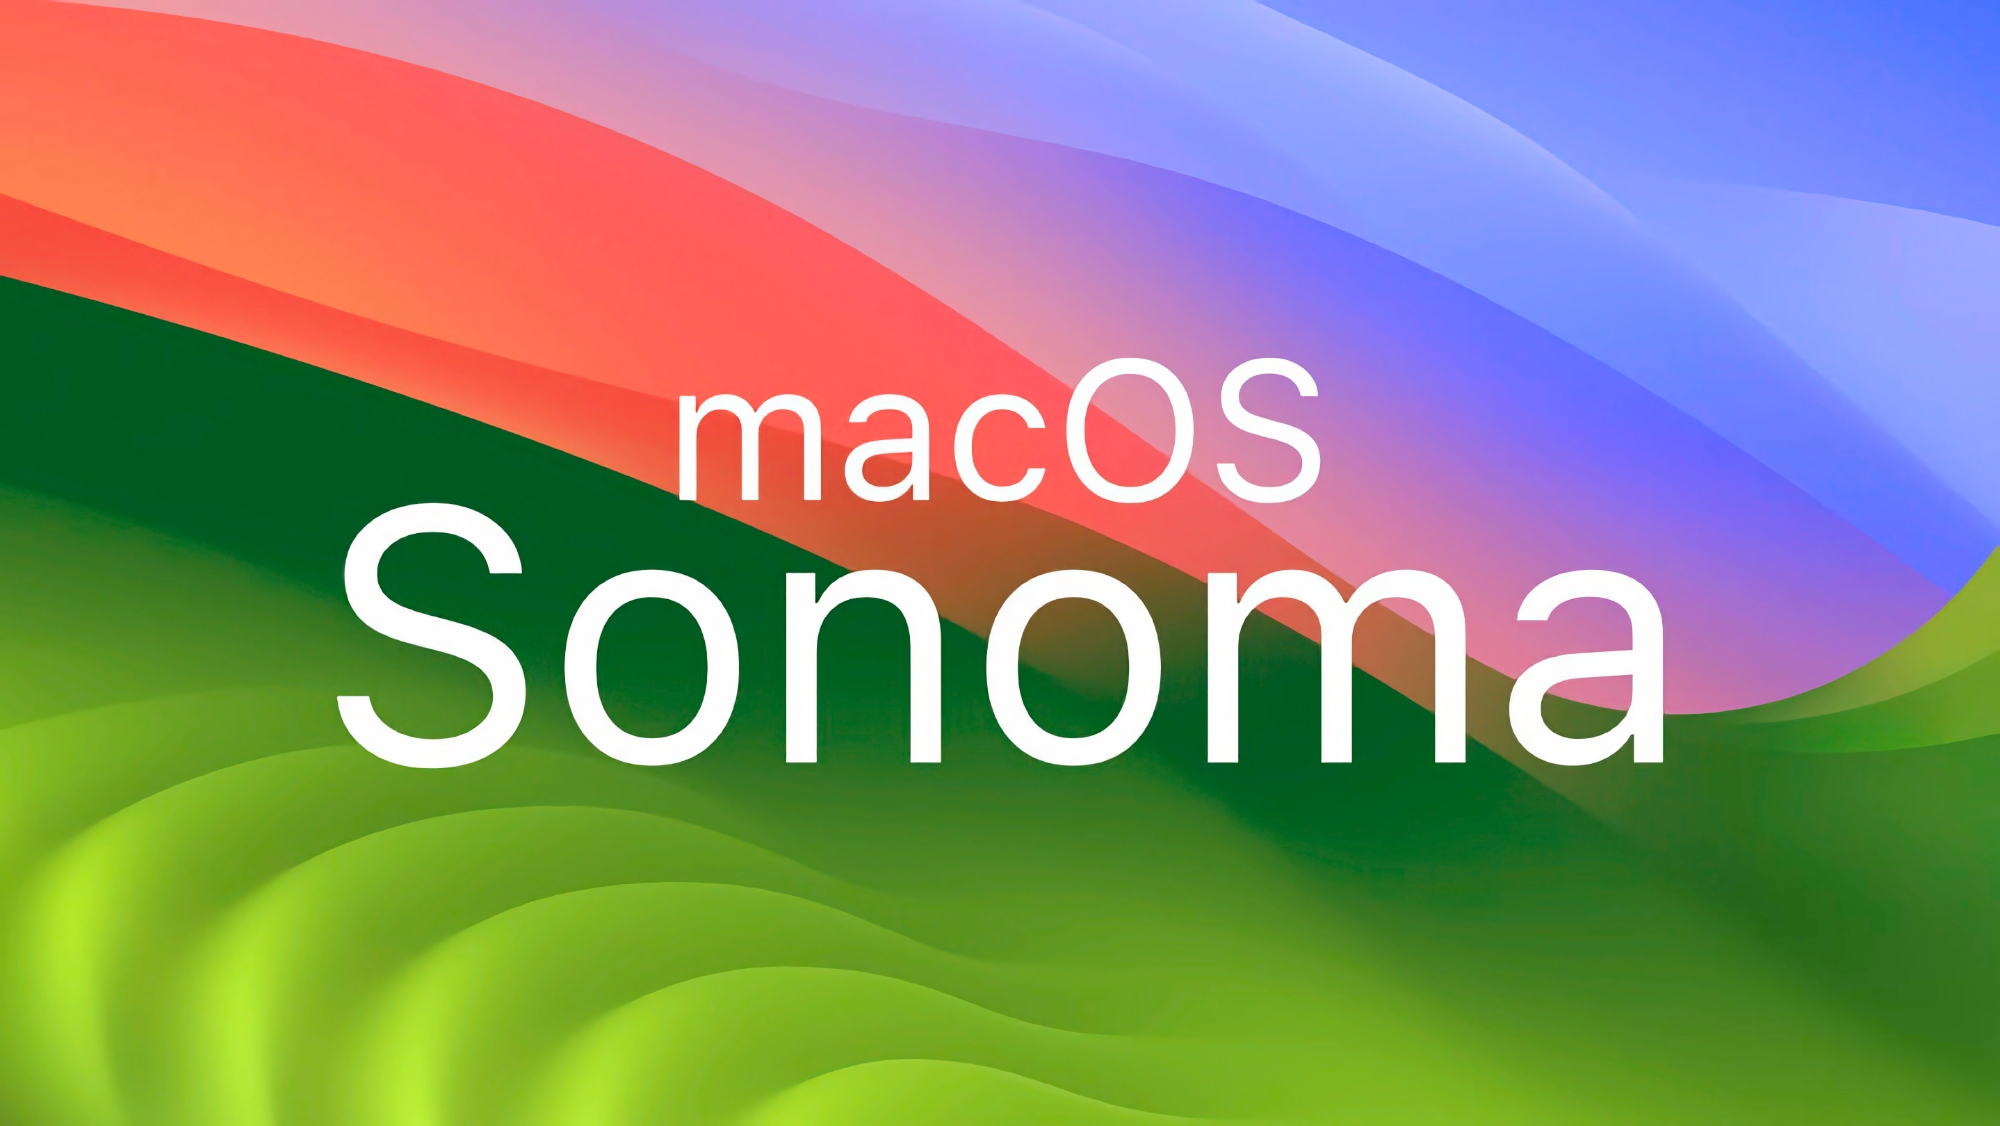 Po iOS 17 Beta 3: Apple publikuje trzecią wersję beta macOS 14 Sonoma